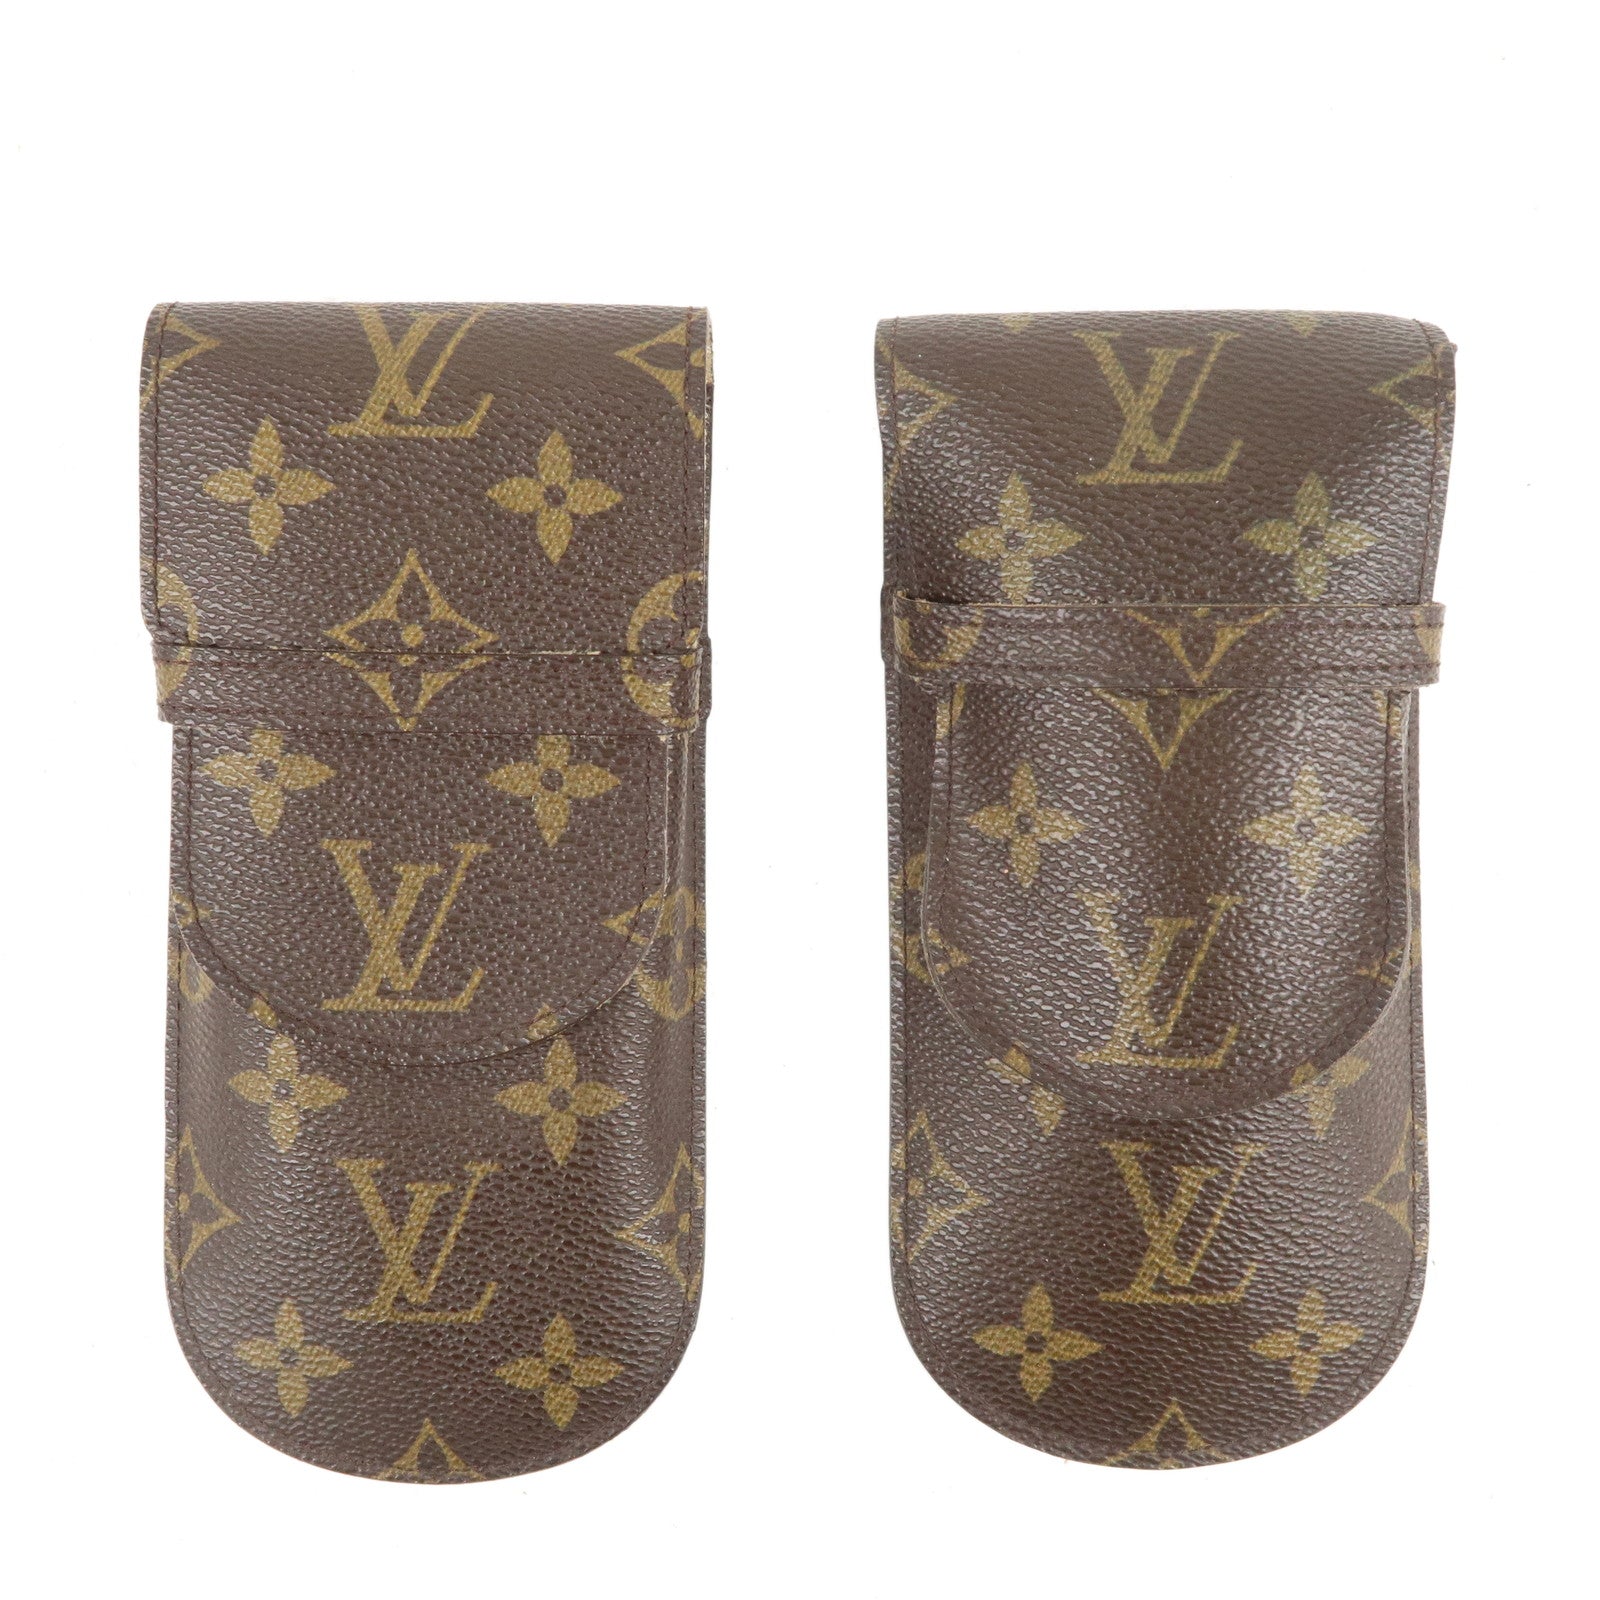 Louis-Vuitton-Monogram-Set-of-2-Glasses-Case-Brown-M62970 – dct